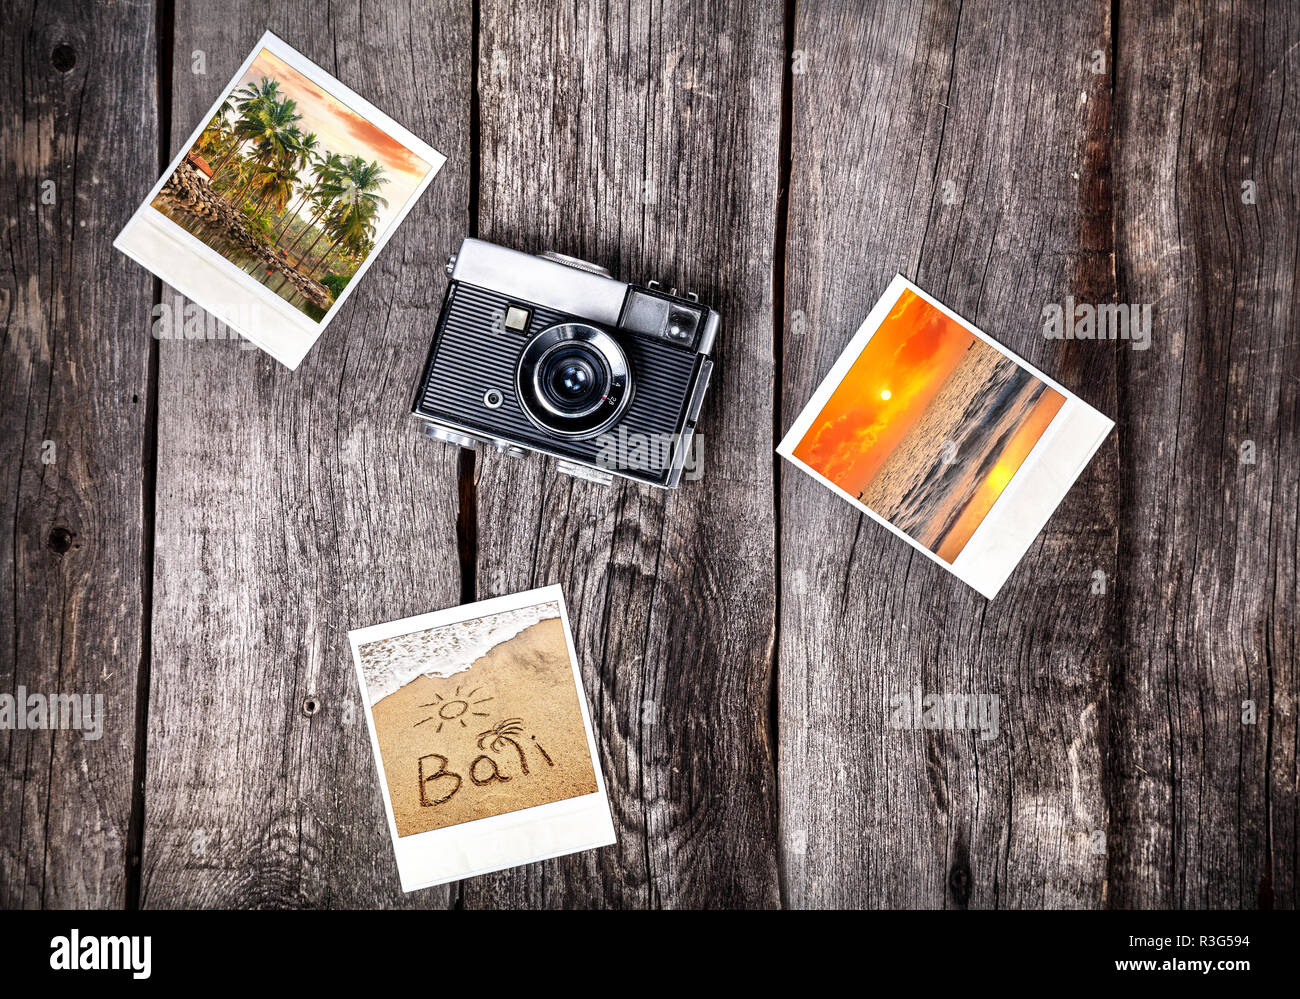 Vieux film Polaroid appareil photo et photos avec plages tropicales de Bali sur le fond en bois Banque D'Images